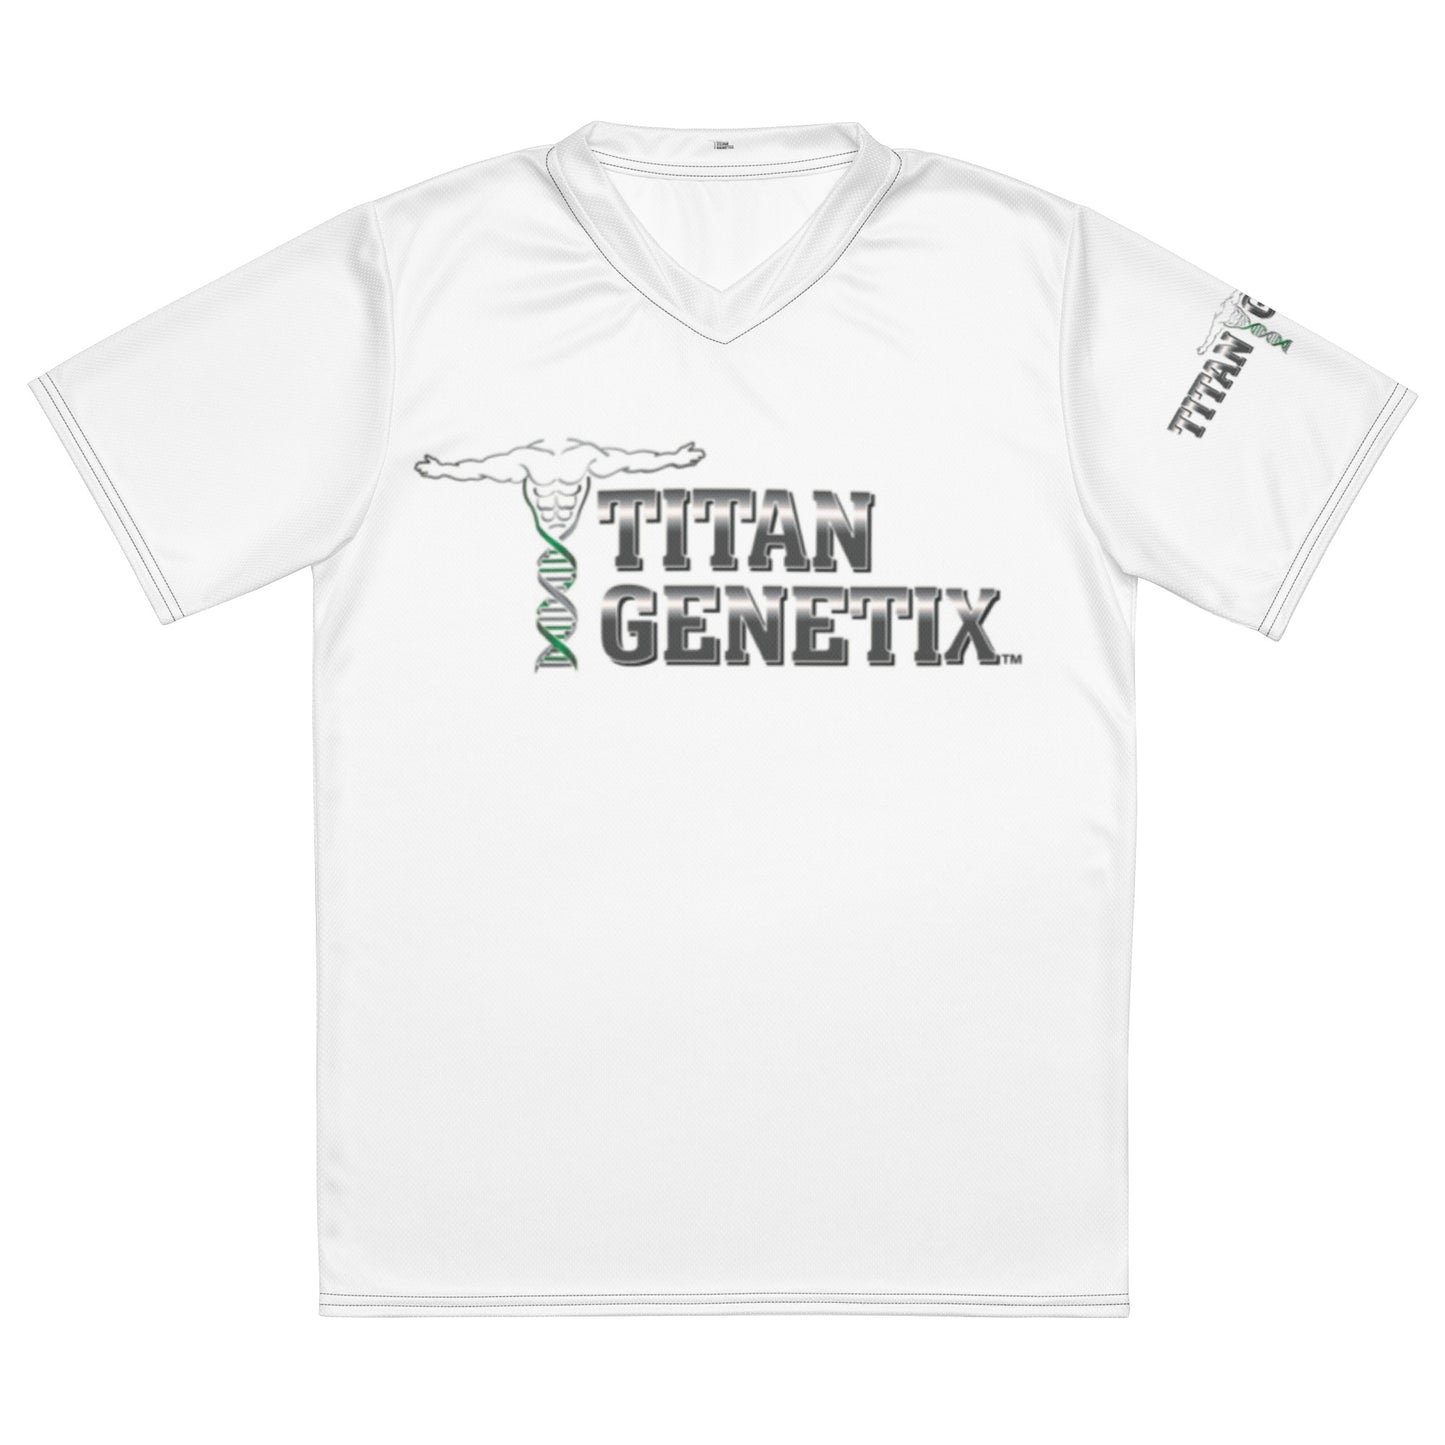 Titan Genetix Unisex Jersey - Black Stitching